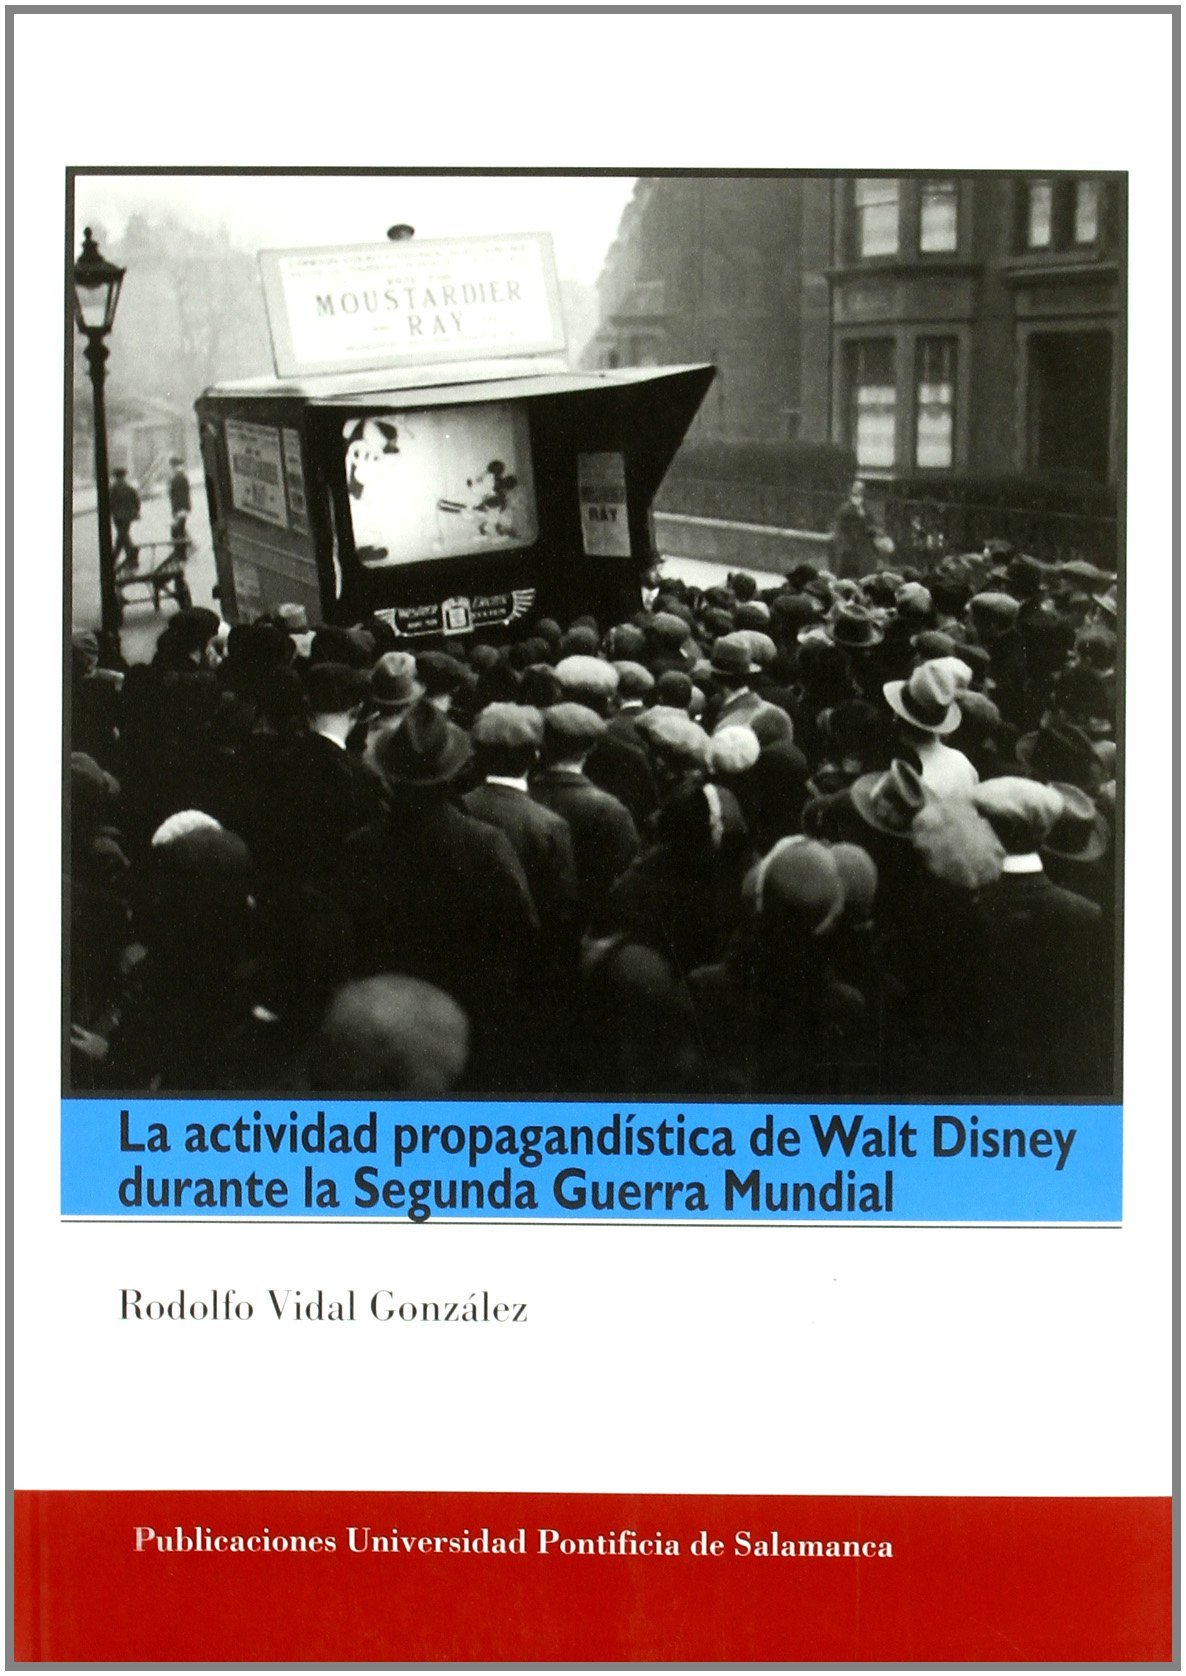 Imagen de portada del libro La actividad propagandística de Walt Disney durante la Segunda Guerra Mundial